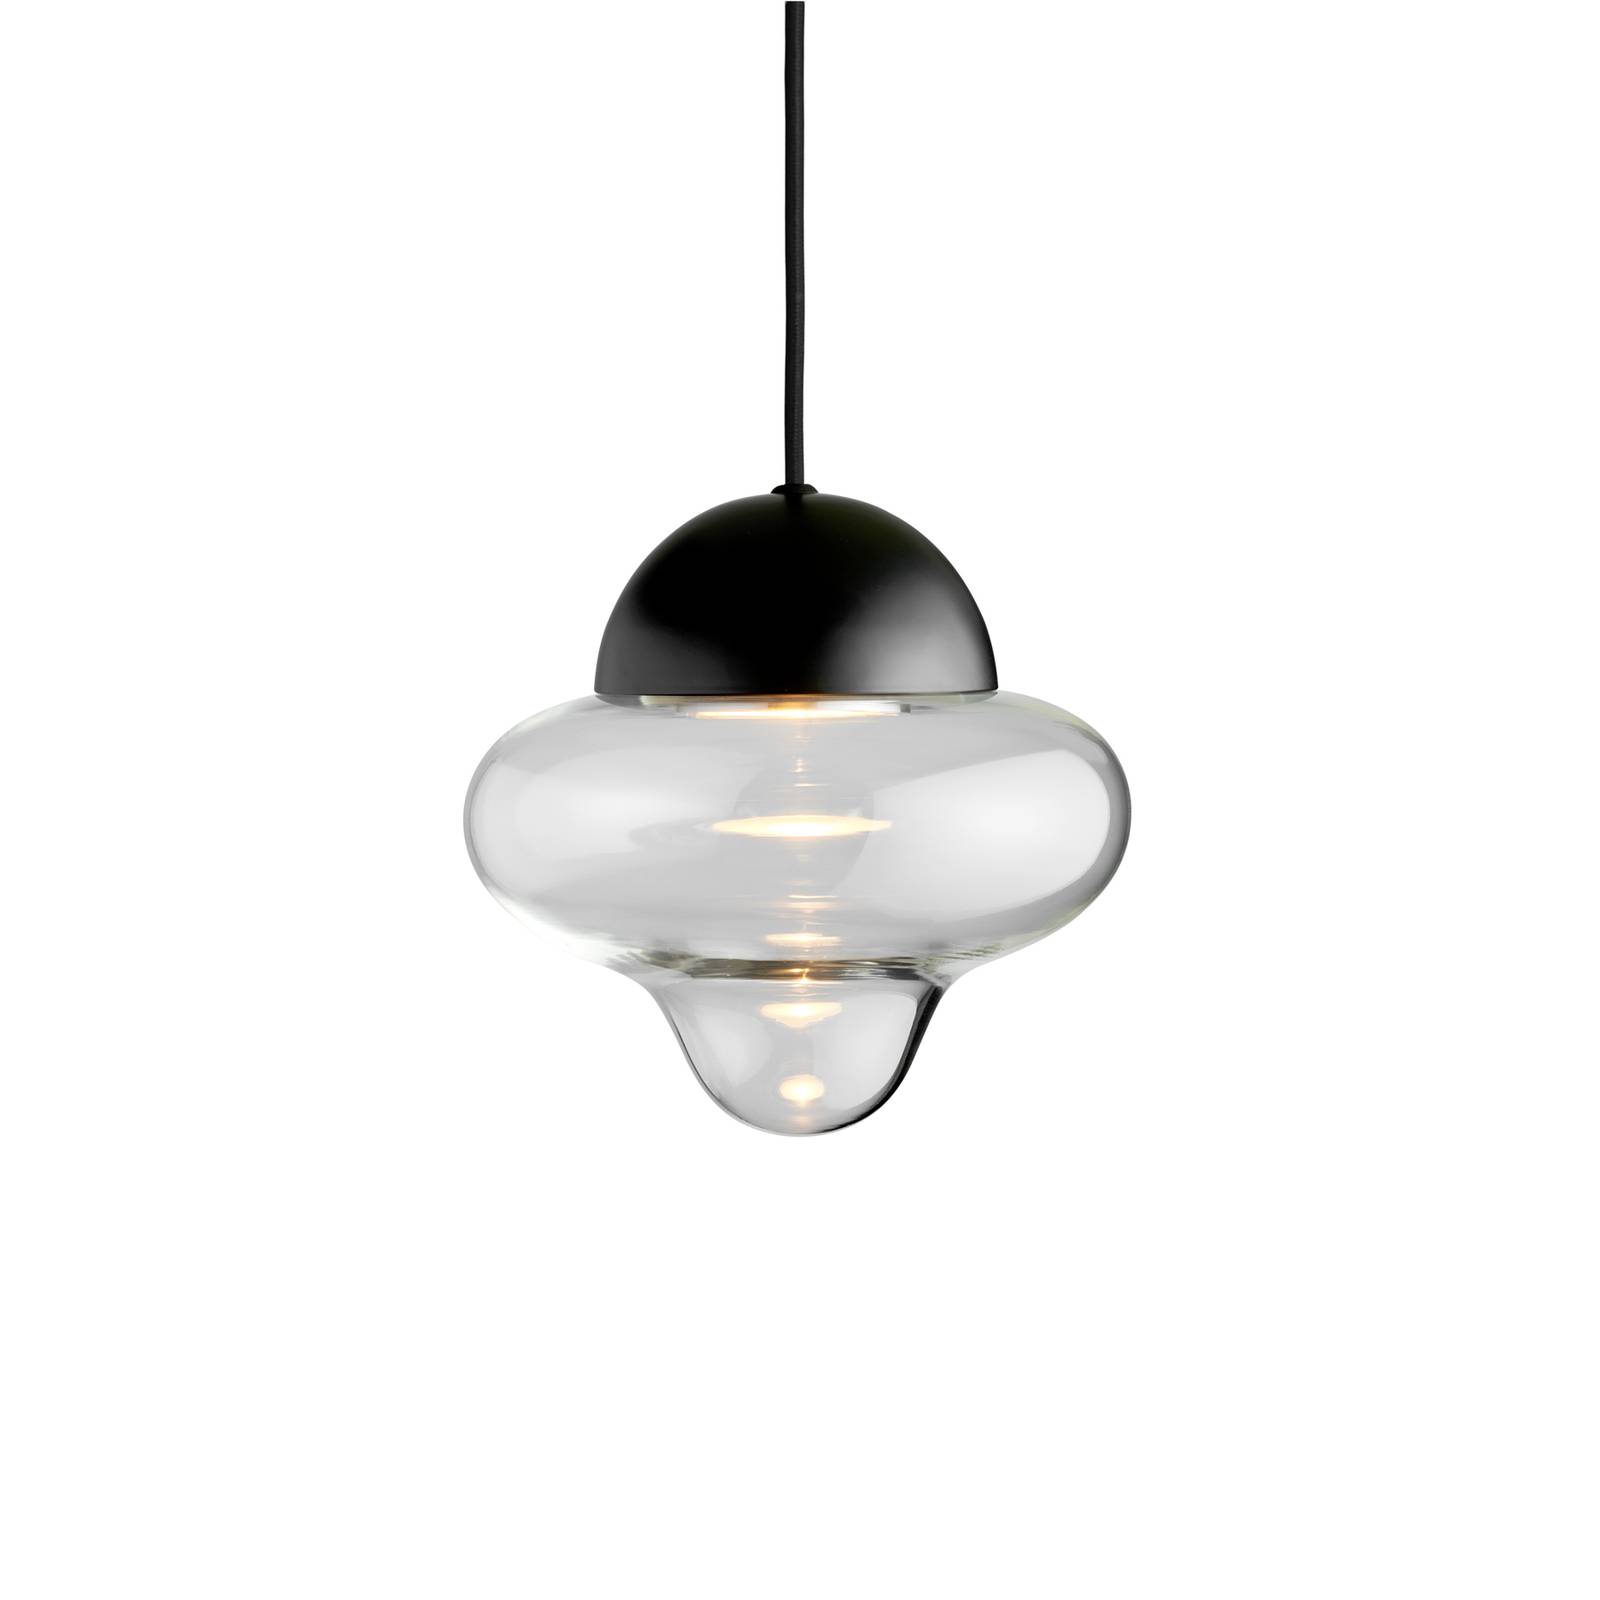 DESIGN BY US Závěsné svítidlo LED Nutty, čiré / černé, Ø 18,5 cm, sklo